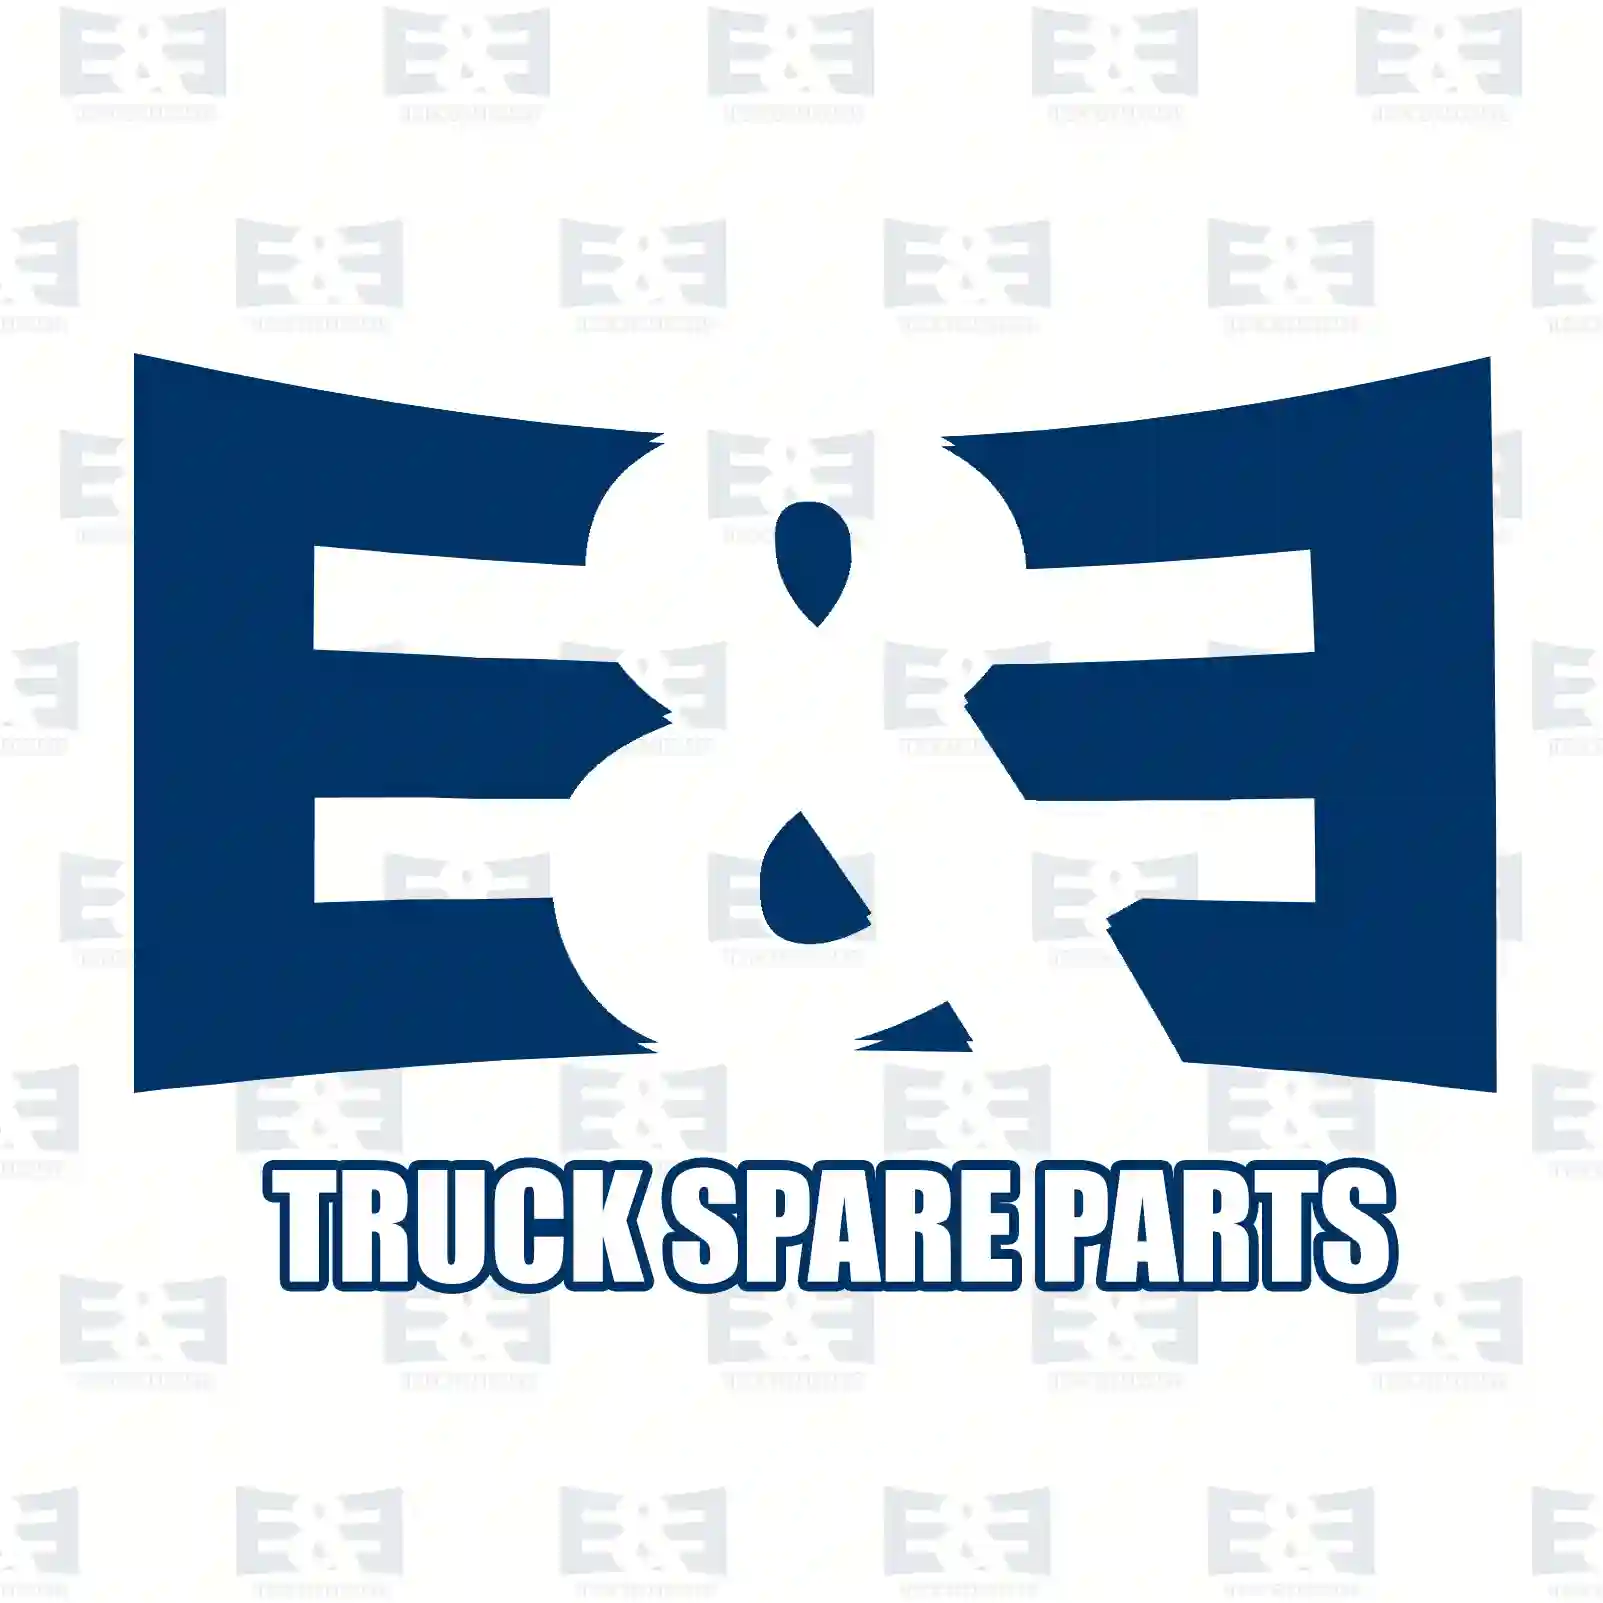 Engine mounting, front, right, 2E2207687, 5010316592, , , , , , ||  2E2207687 E&E Truck Spare Parts | Truck Spare Parts, Auotomotive Spare Parts Engine mounting, front, right, 2E2207687, 5010316592, , , , , , ||  2E2207687 E&E Truck Spare Parts | Truck Spare Parts, Auotomotive Spare Parts